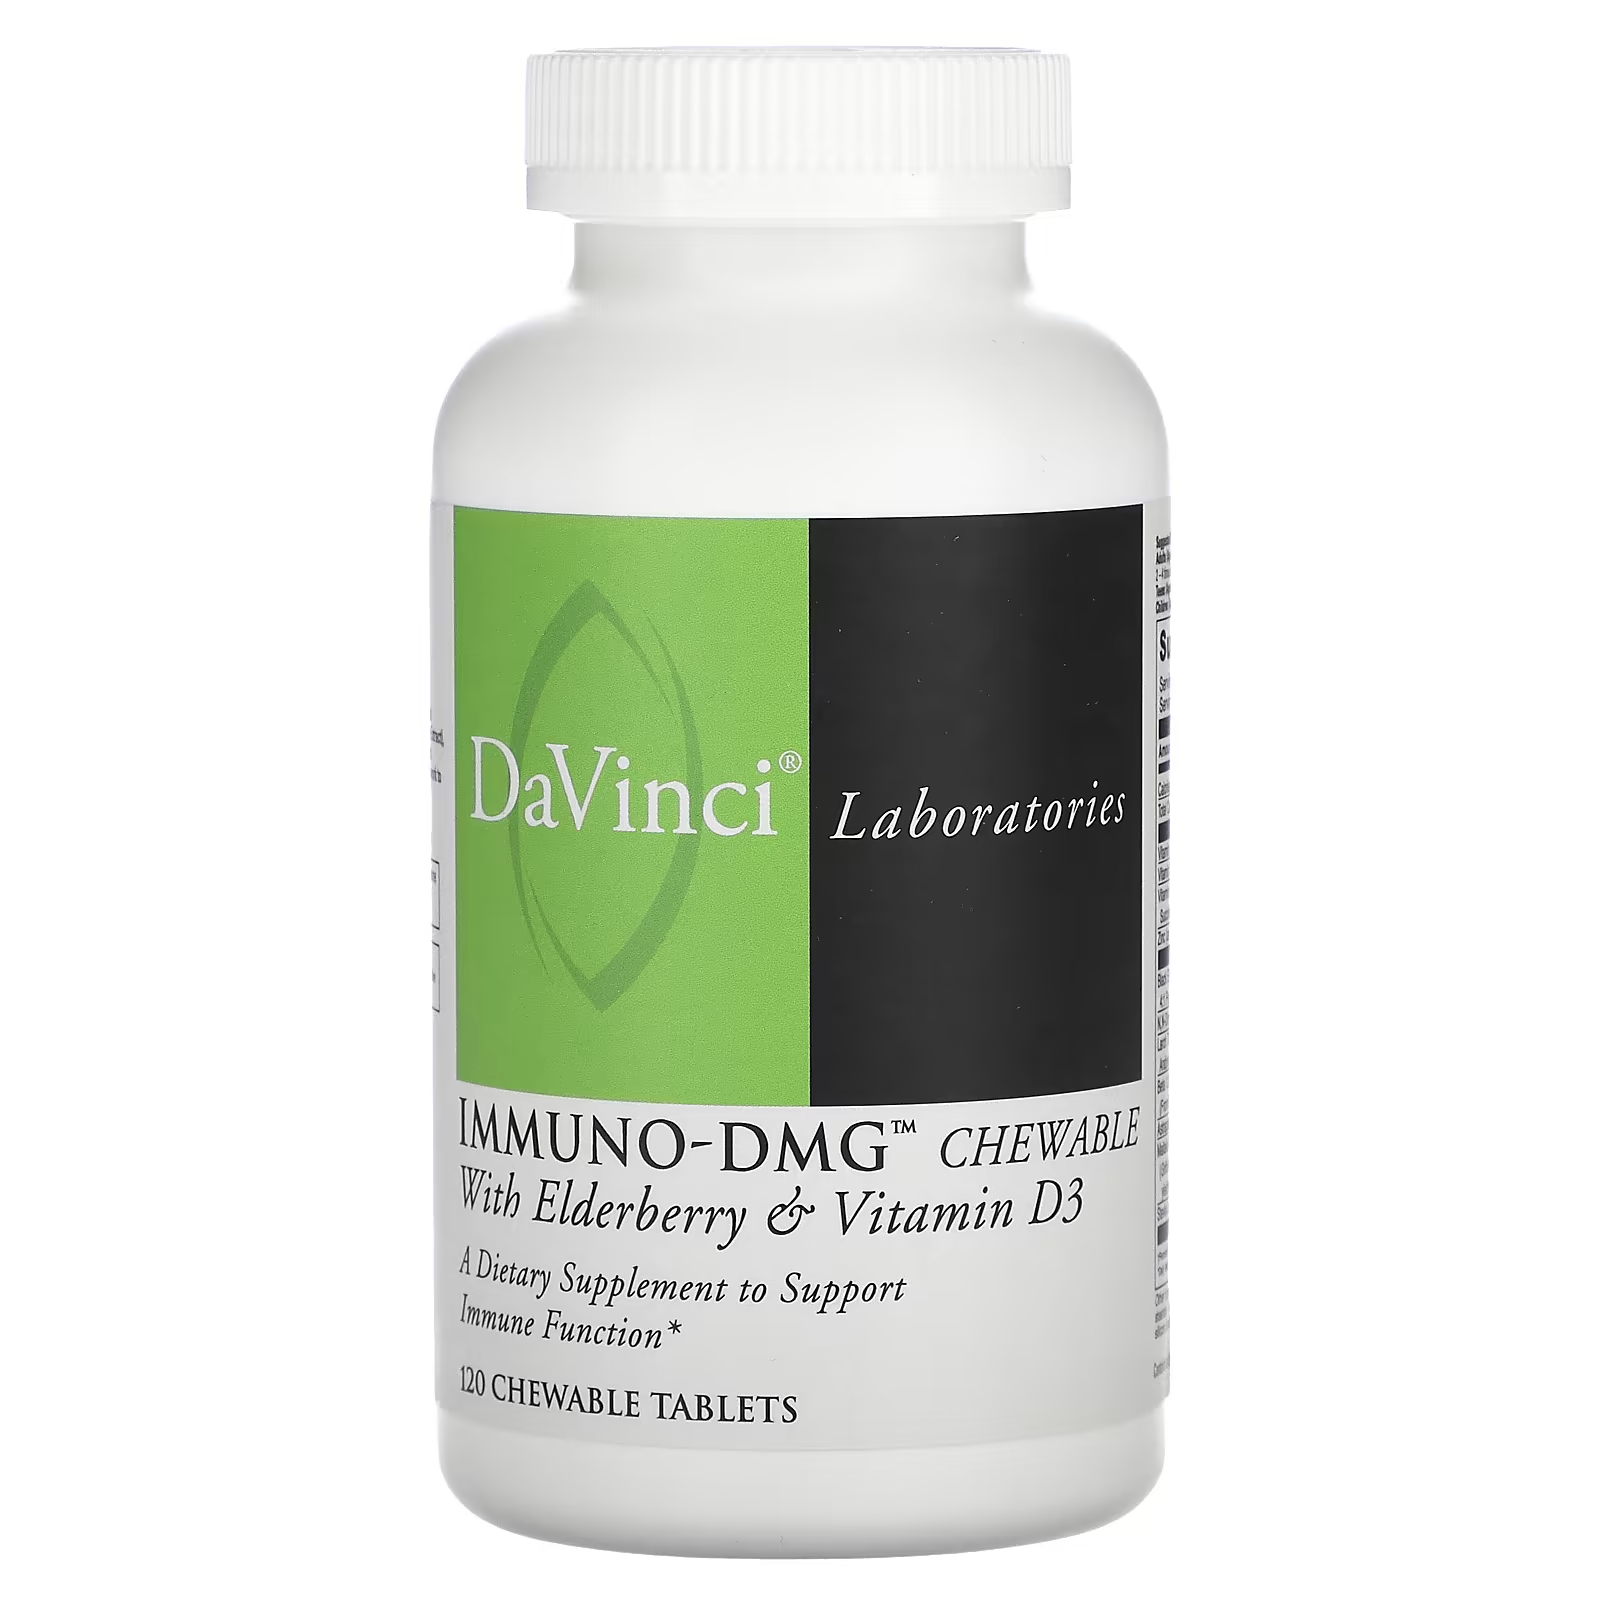 Пищевая добавка DaVinci Laboratories of Vermont Immuno-DMG Chewable с бузиной и витамином D3, 120 жевательных таблеток nature s way жевательные конфеты с бузиной стандартизированный экстракт с витамином c и цинком 60 шт